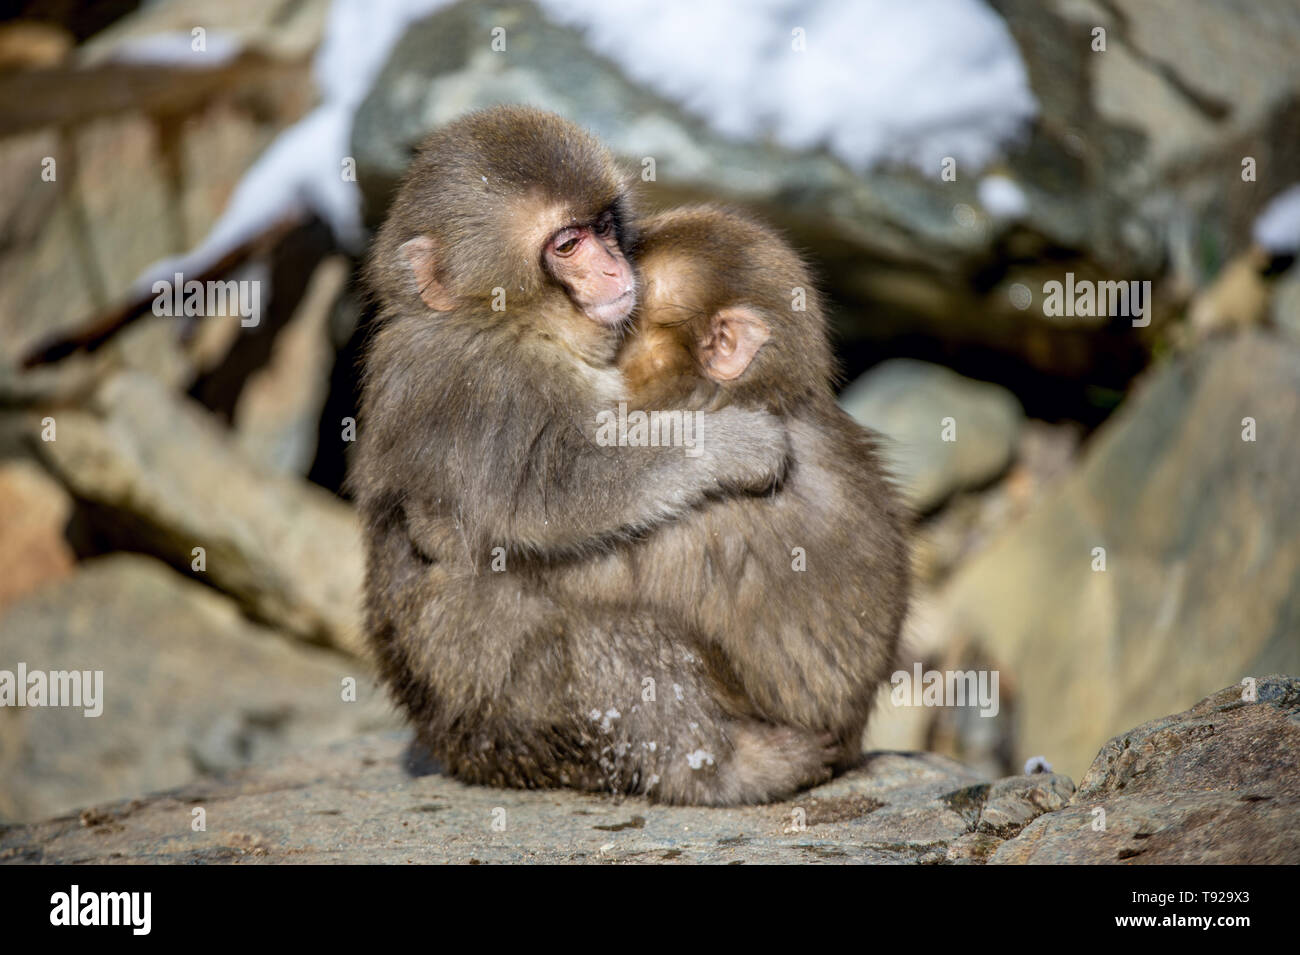 Cubs von japanischen Makaken umarmte. Winter Saison. Die japanischen Makaken, Wissenschaftlicher Name: Macaca fuscata, auch als Snow monkey bekannt. Natürliche Habita Stockfoto